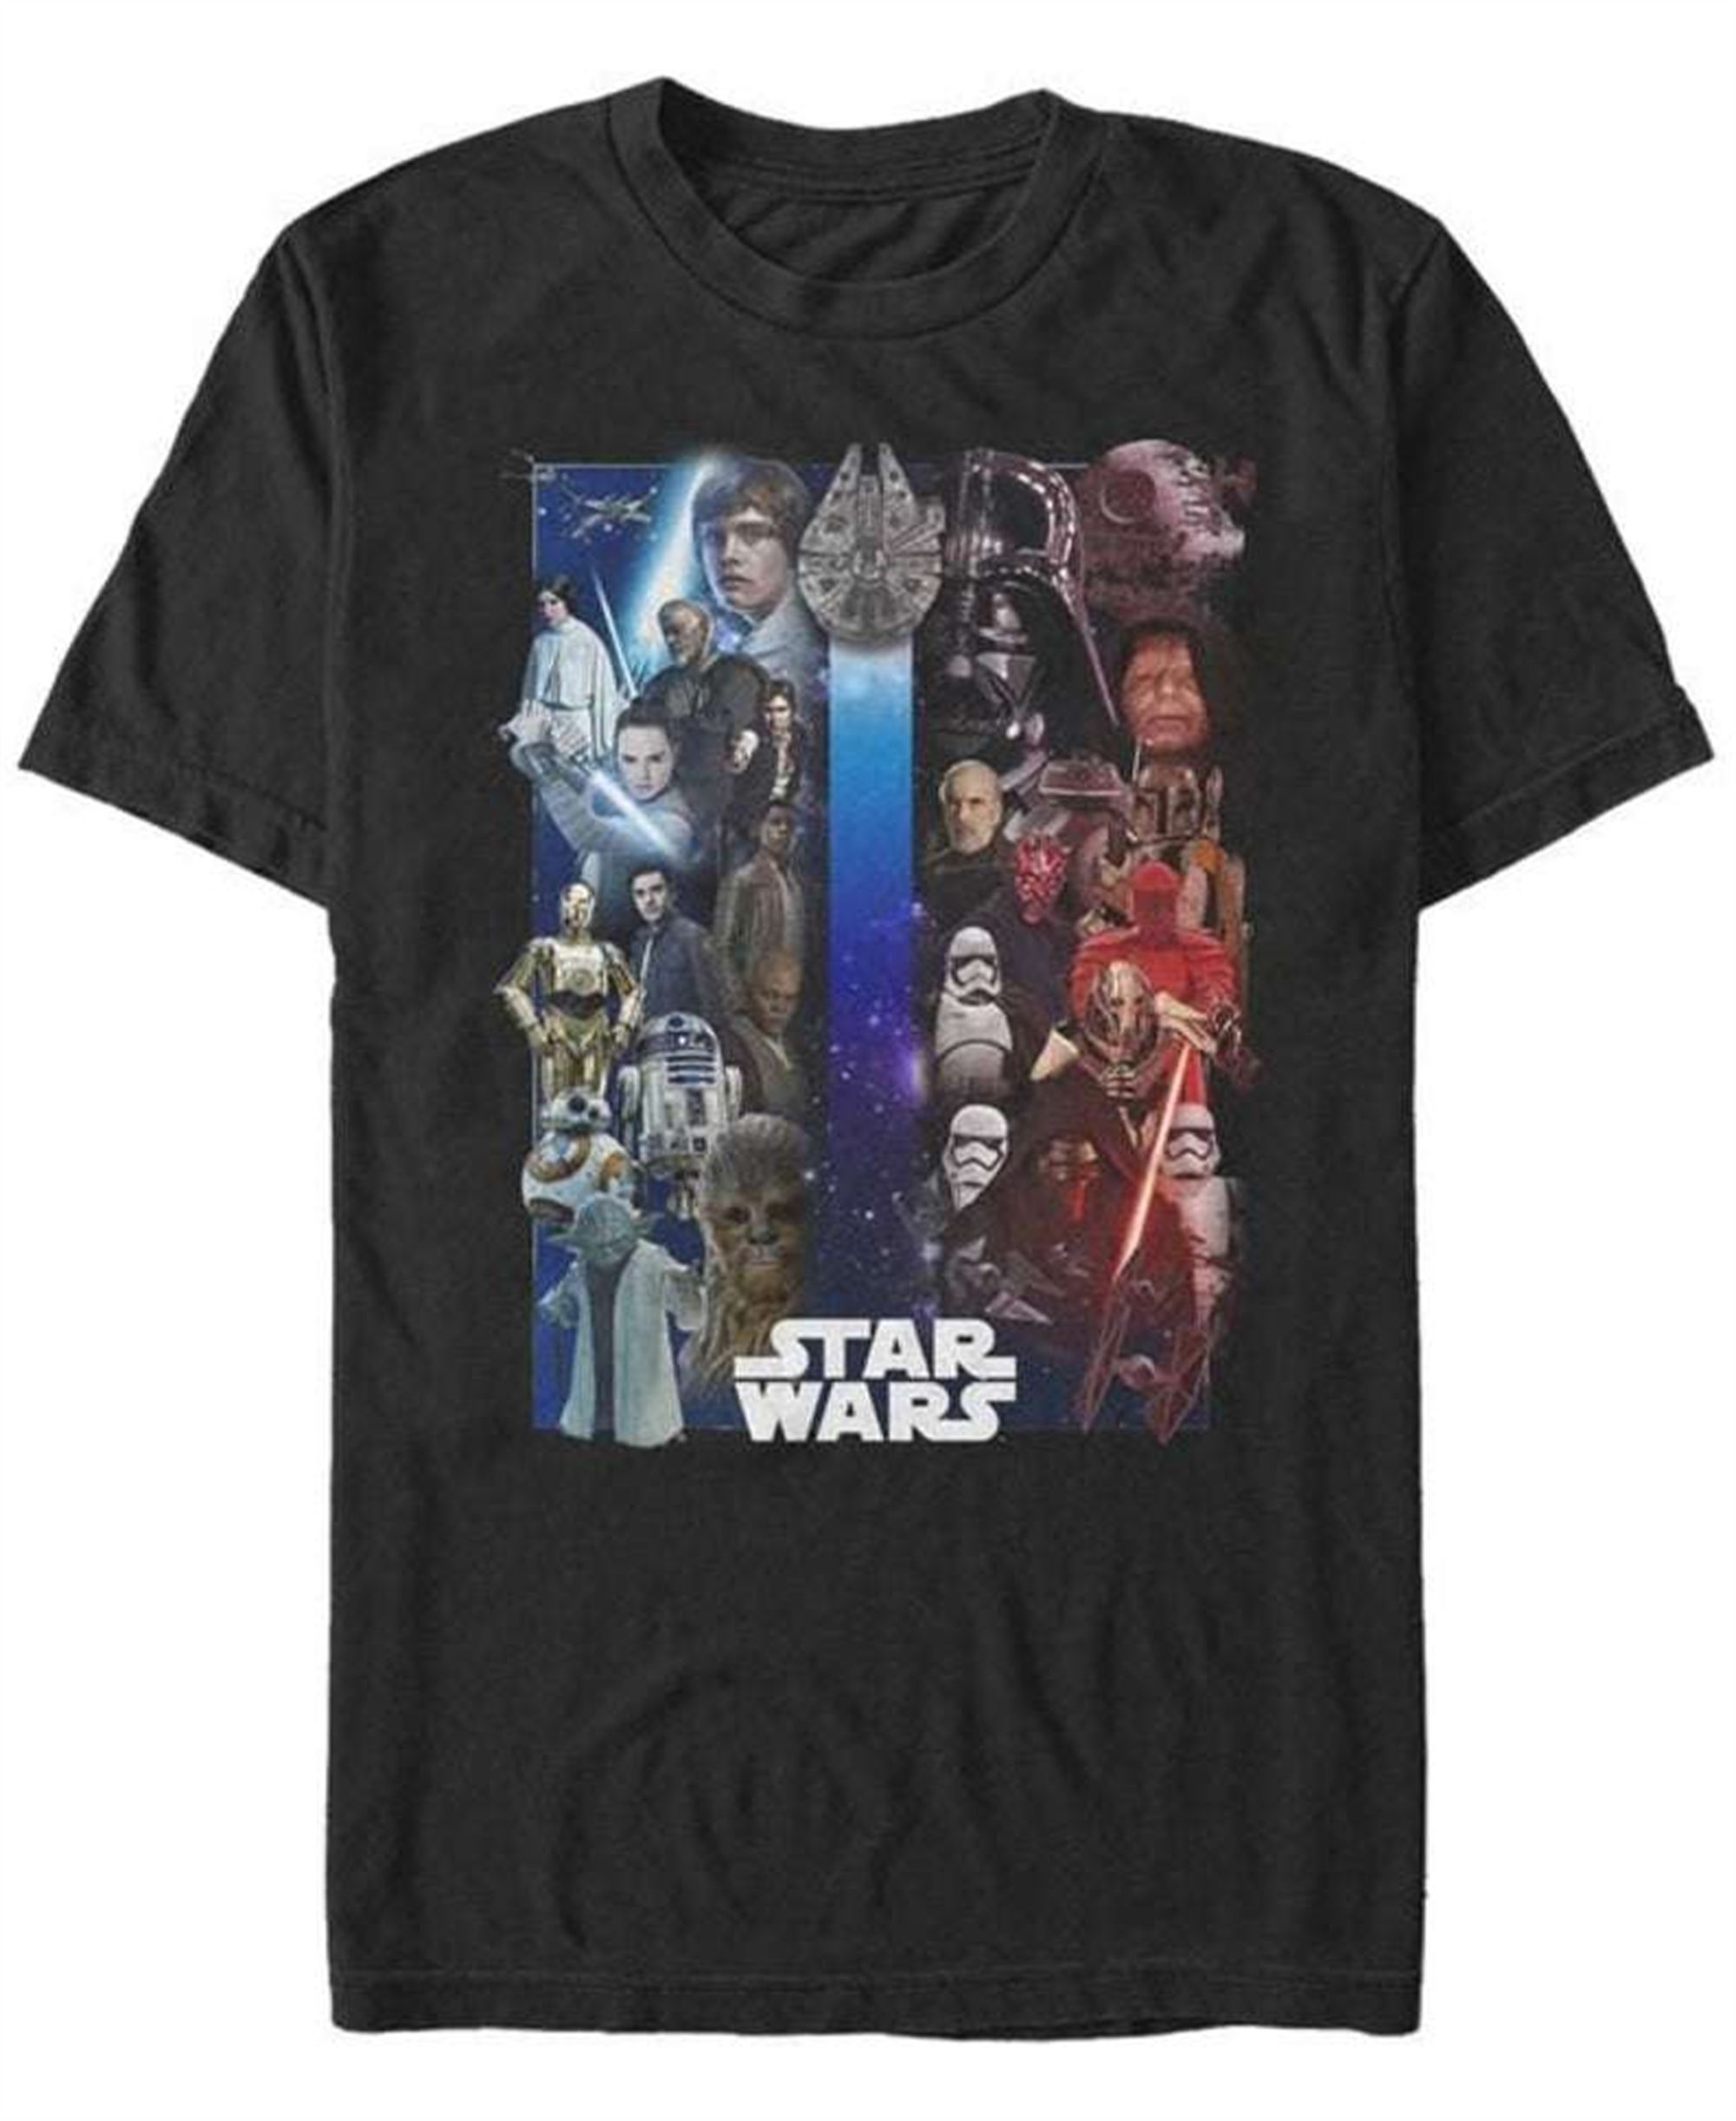 Star Wars Disney Unsiex T Shirt Size Up To 5xl